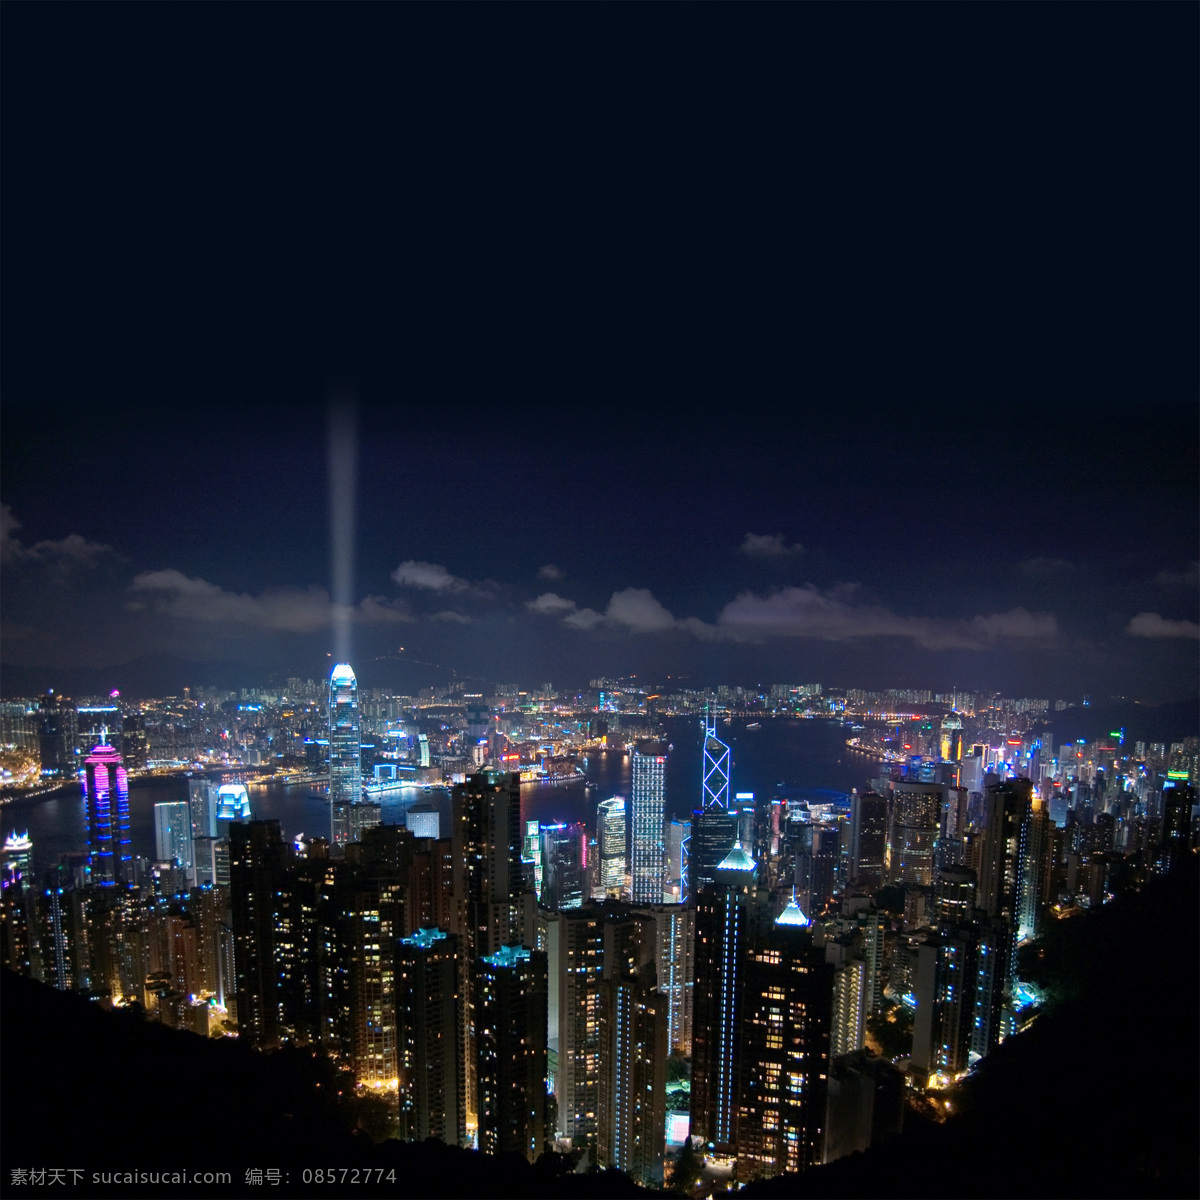 香港 城市 楼房 夜景 香港场景 夜间 灯光 高楼 高楼大厦 高清图片 城市风光 环境家居